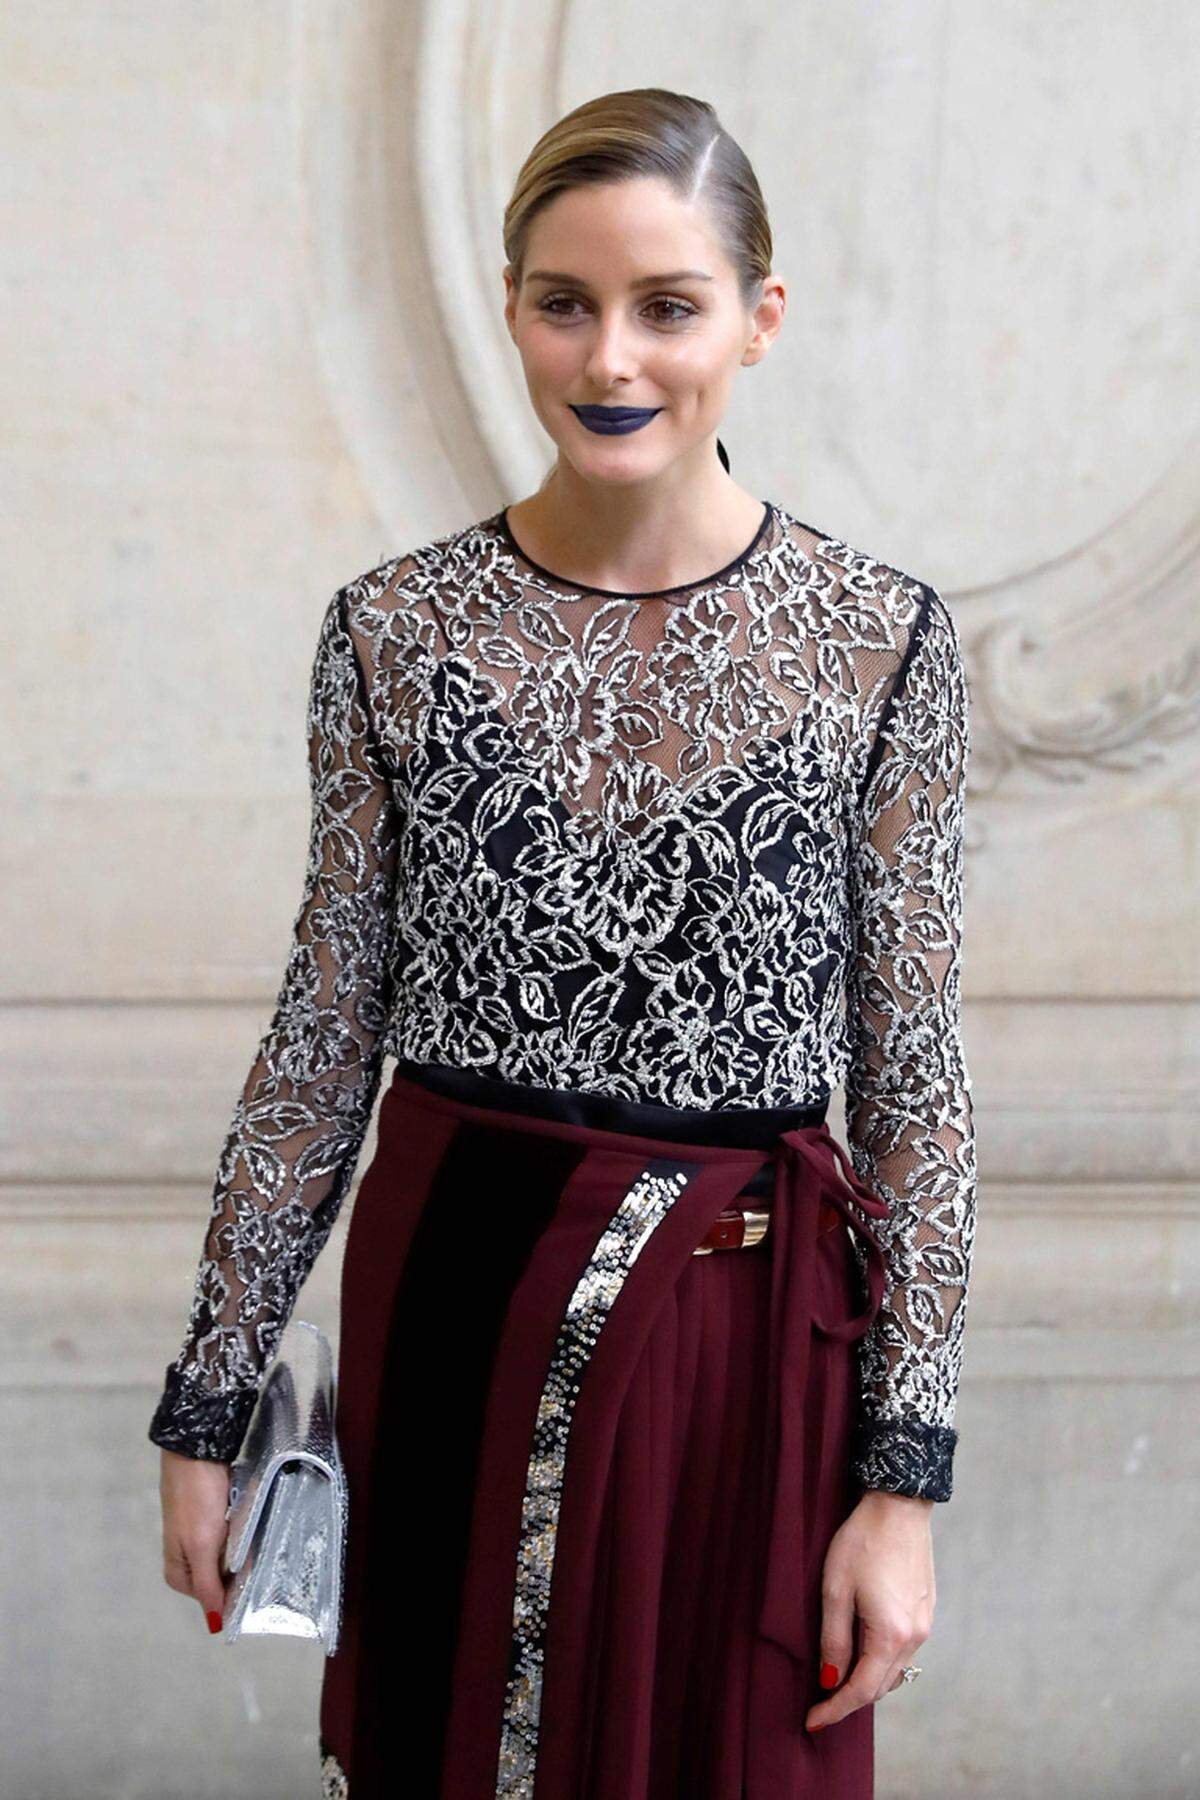 Wer auch in Sachen Make-up voll im Trend liegen möchte, zeigt sich jetzt mutig. Fashionistas wie Streetstyle-Star Olivia Palermo setzen jetzt nämlich auf blauen Lippenstift.